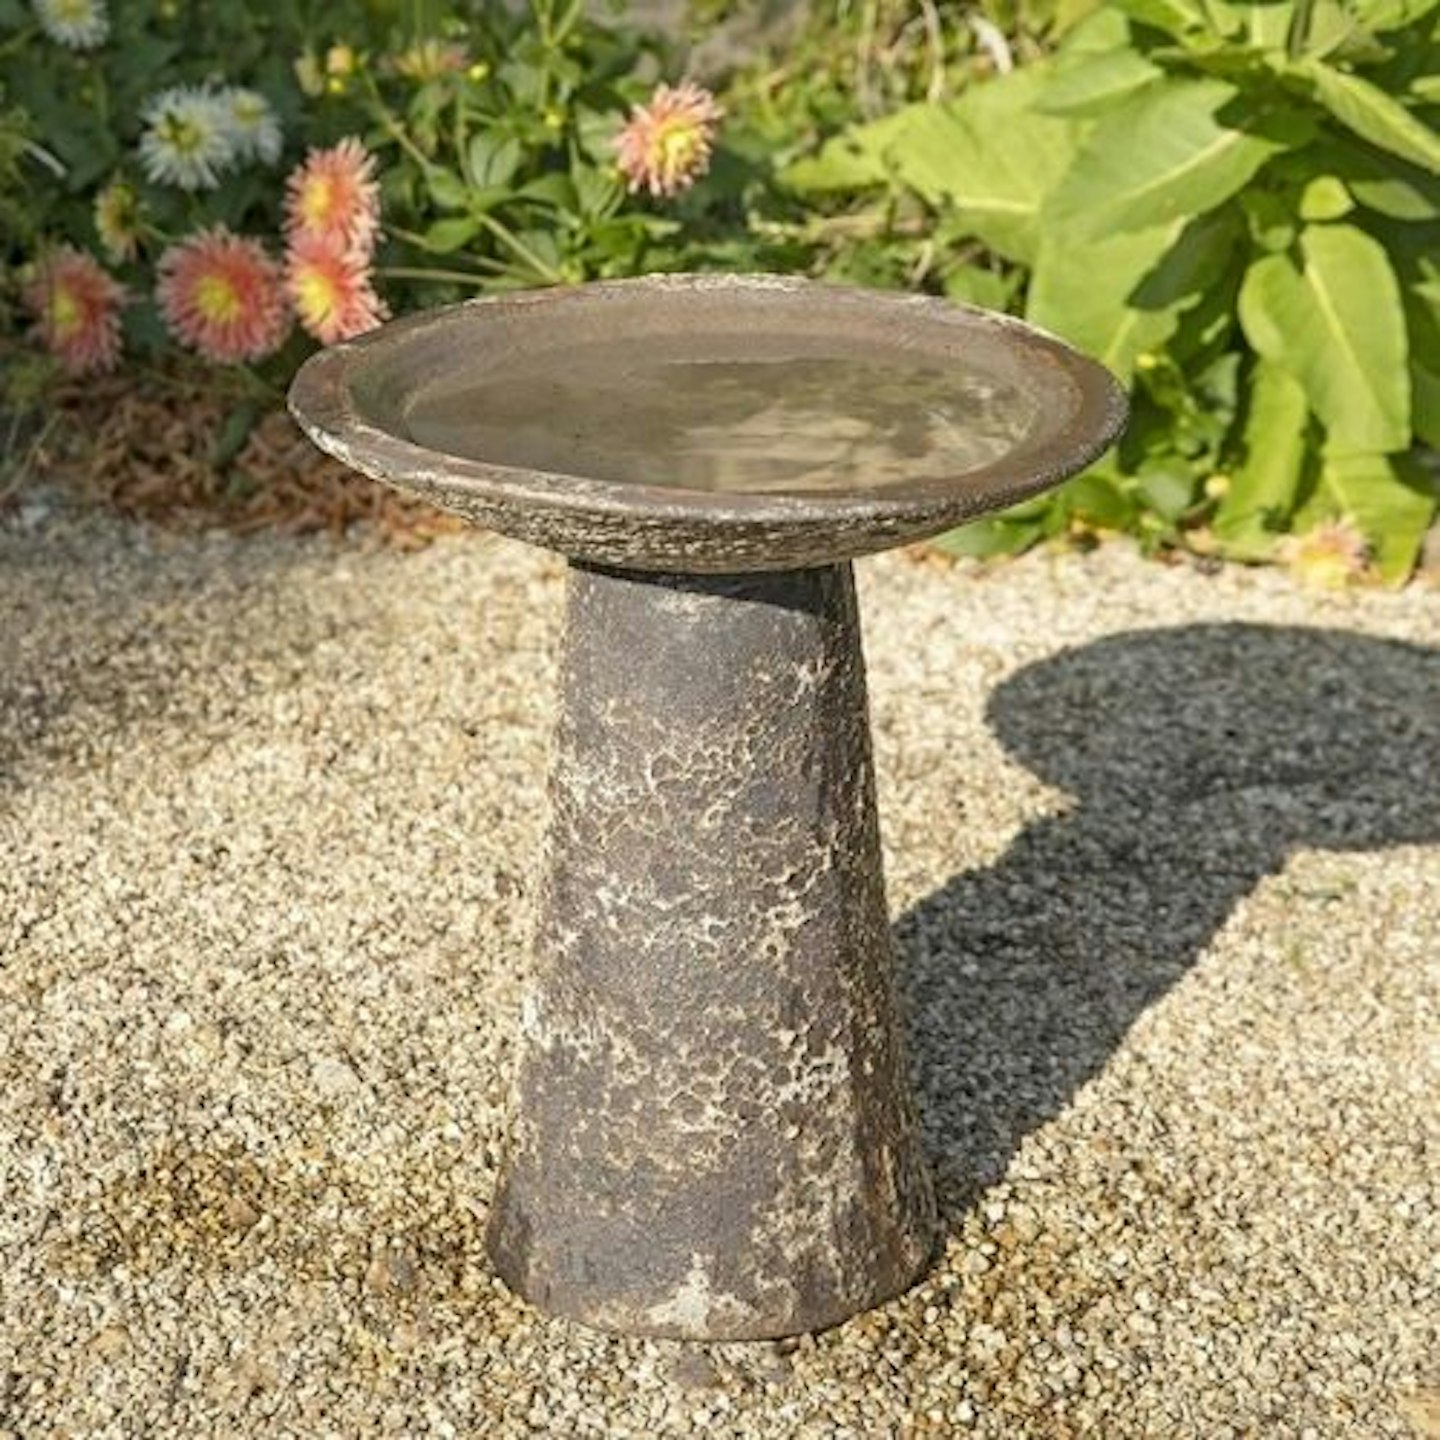 Stone Garden Bird Bath - Salt Glaze & Detachable Top